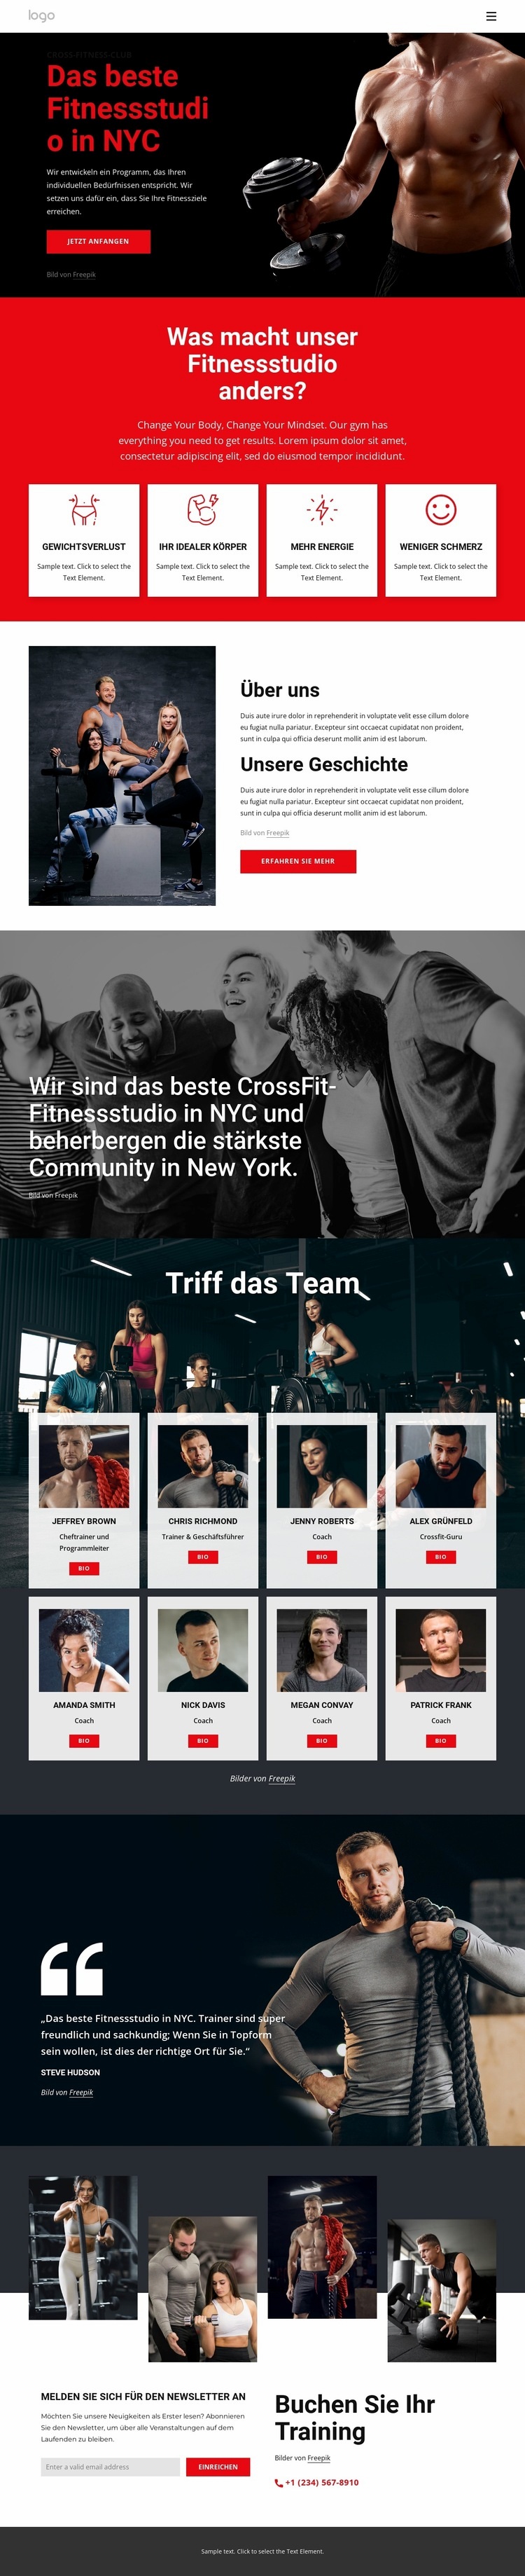 Das beste Crossfit-Fitnessstudio HTML5-Vorlage